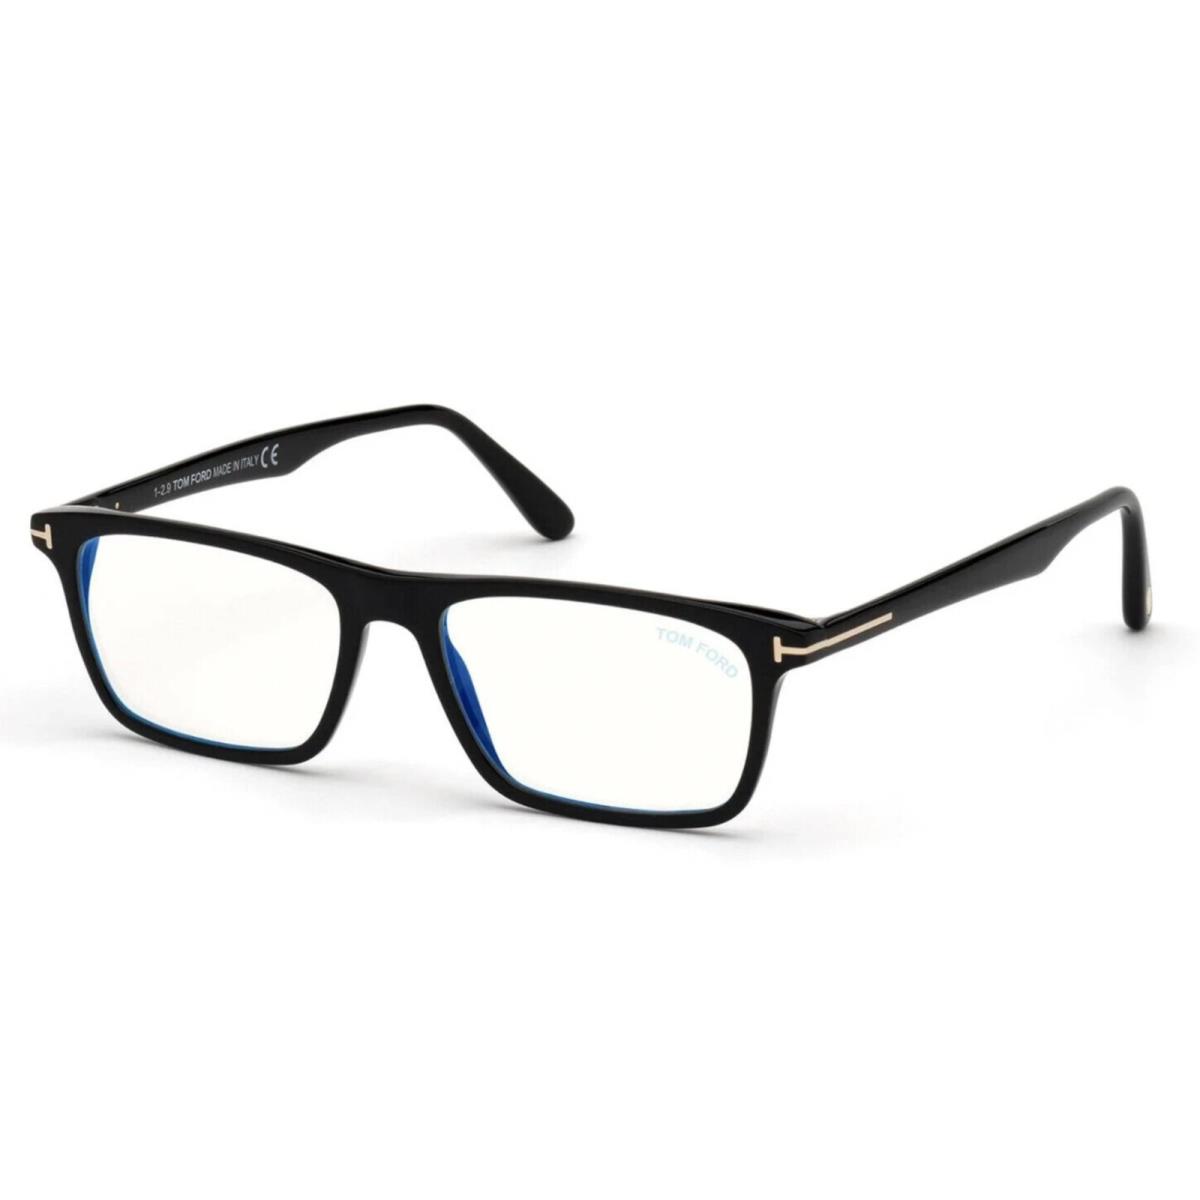 Tom Ford Eyeglasses TF 5681-B 001 56-16 145 Black Frames W/blue Block Lenses